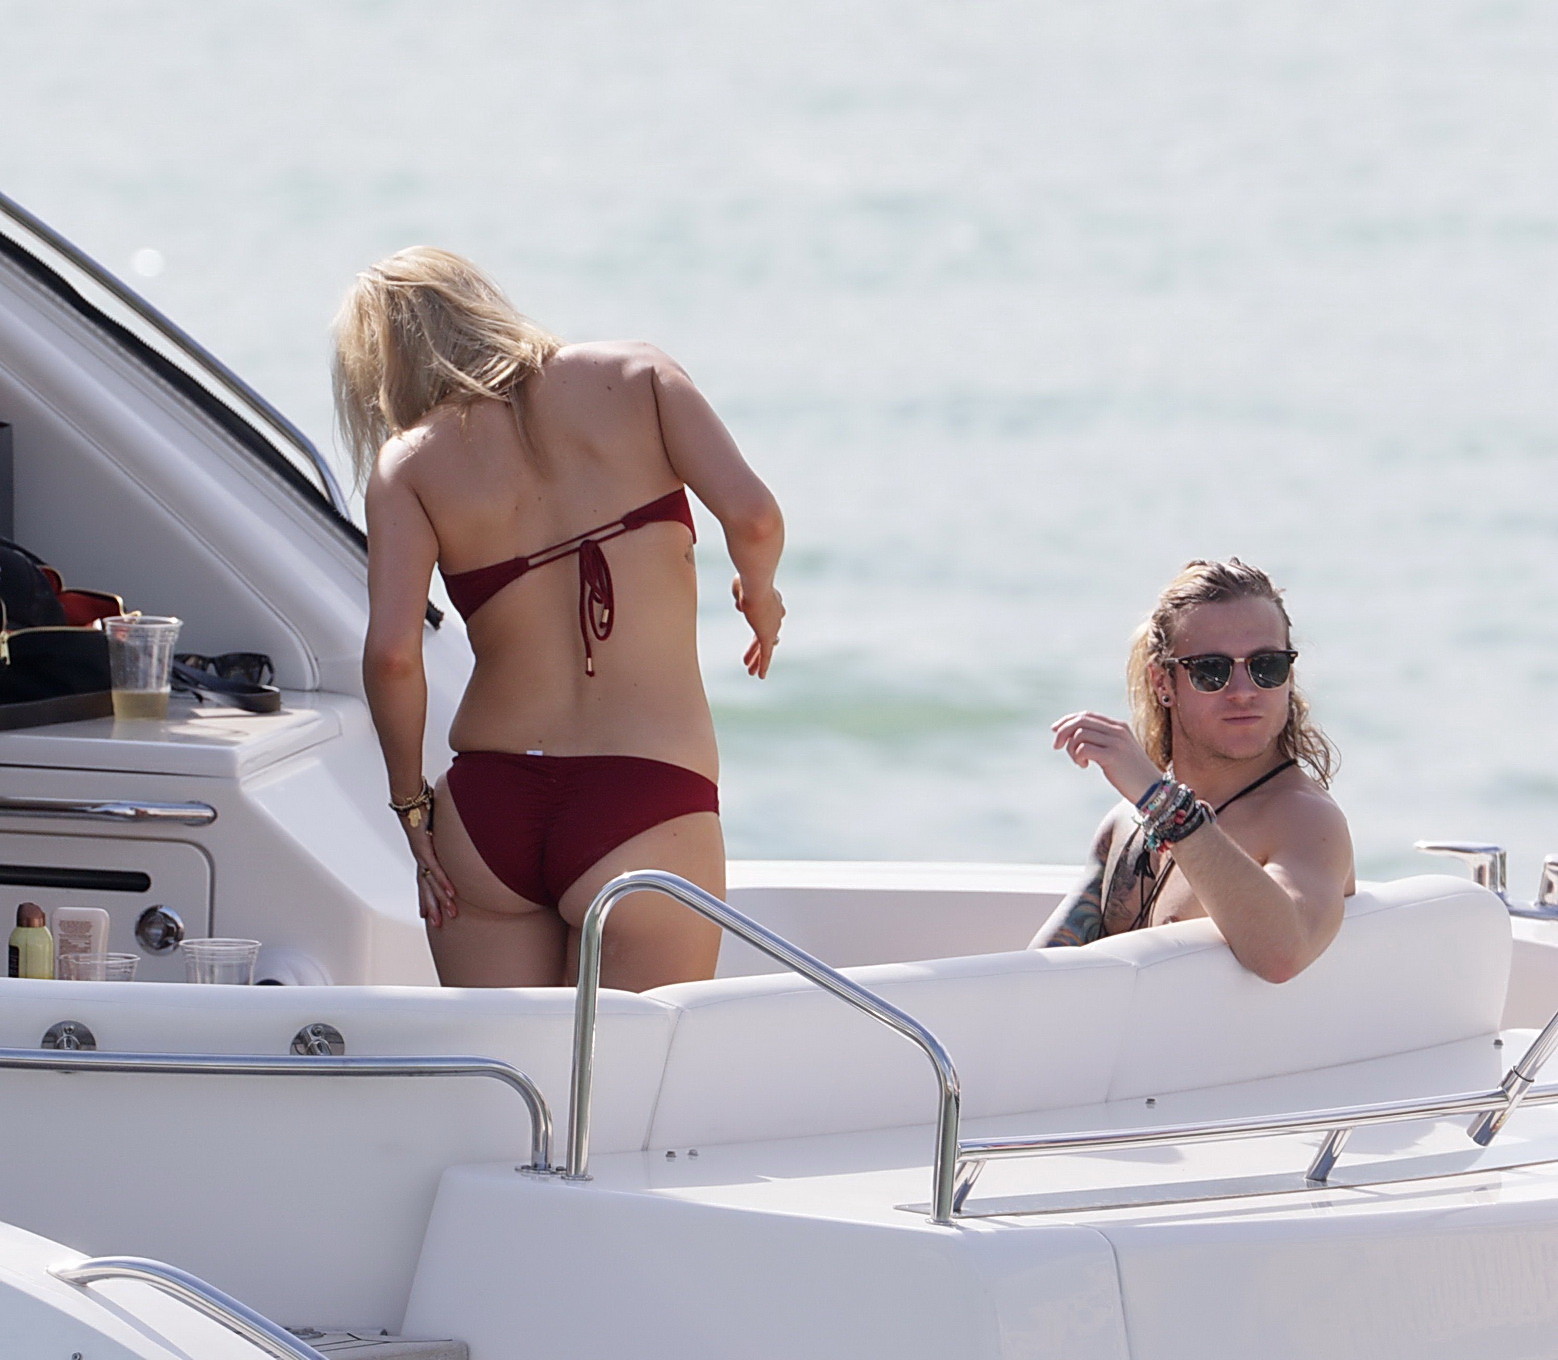 Ellie goulding zeigt ihren Arsch in einem knappen kirschroten Bikini auf dem Boot in mi
 #75177126